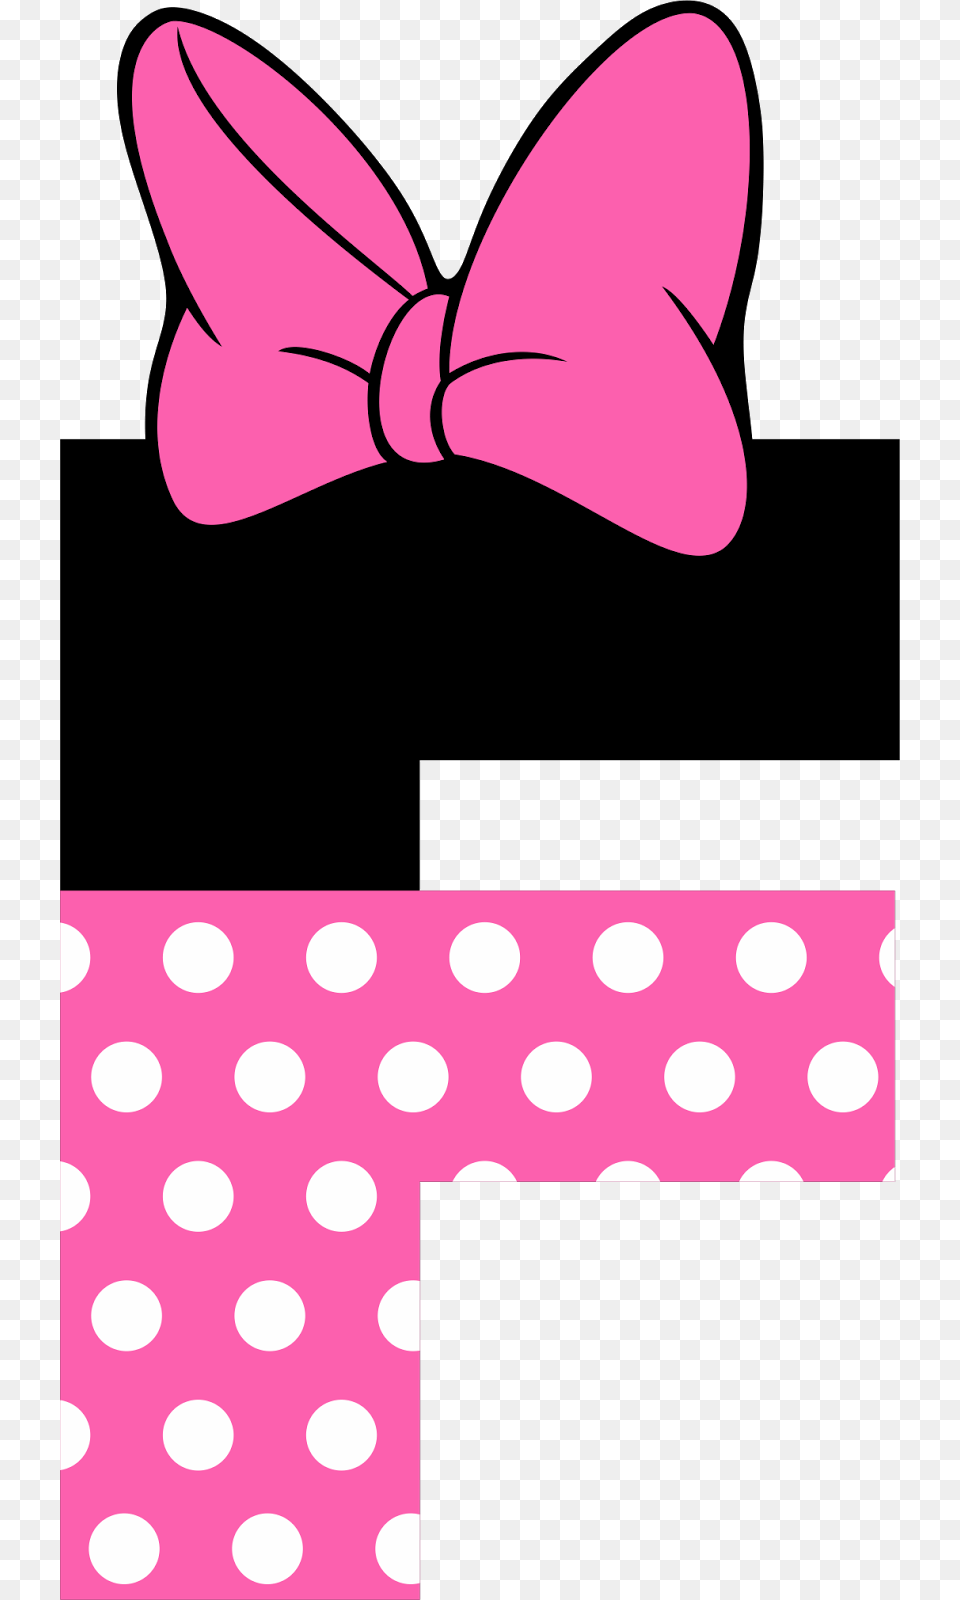 Precioso Alfabeto Tipo Minnie Rosa Minnie Mouse Letter Design, Accessories, Pattern, Formal Wear, Tie Png Image